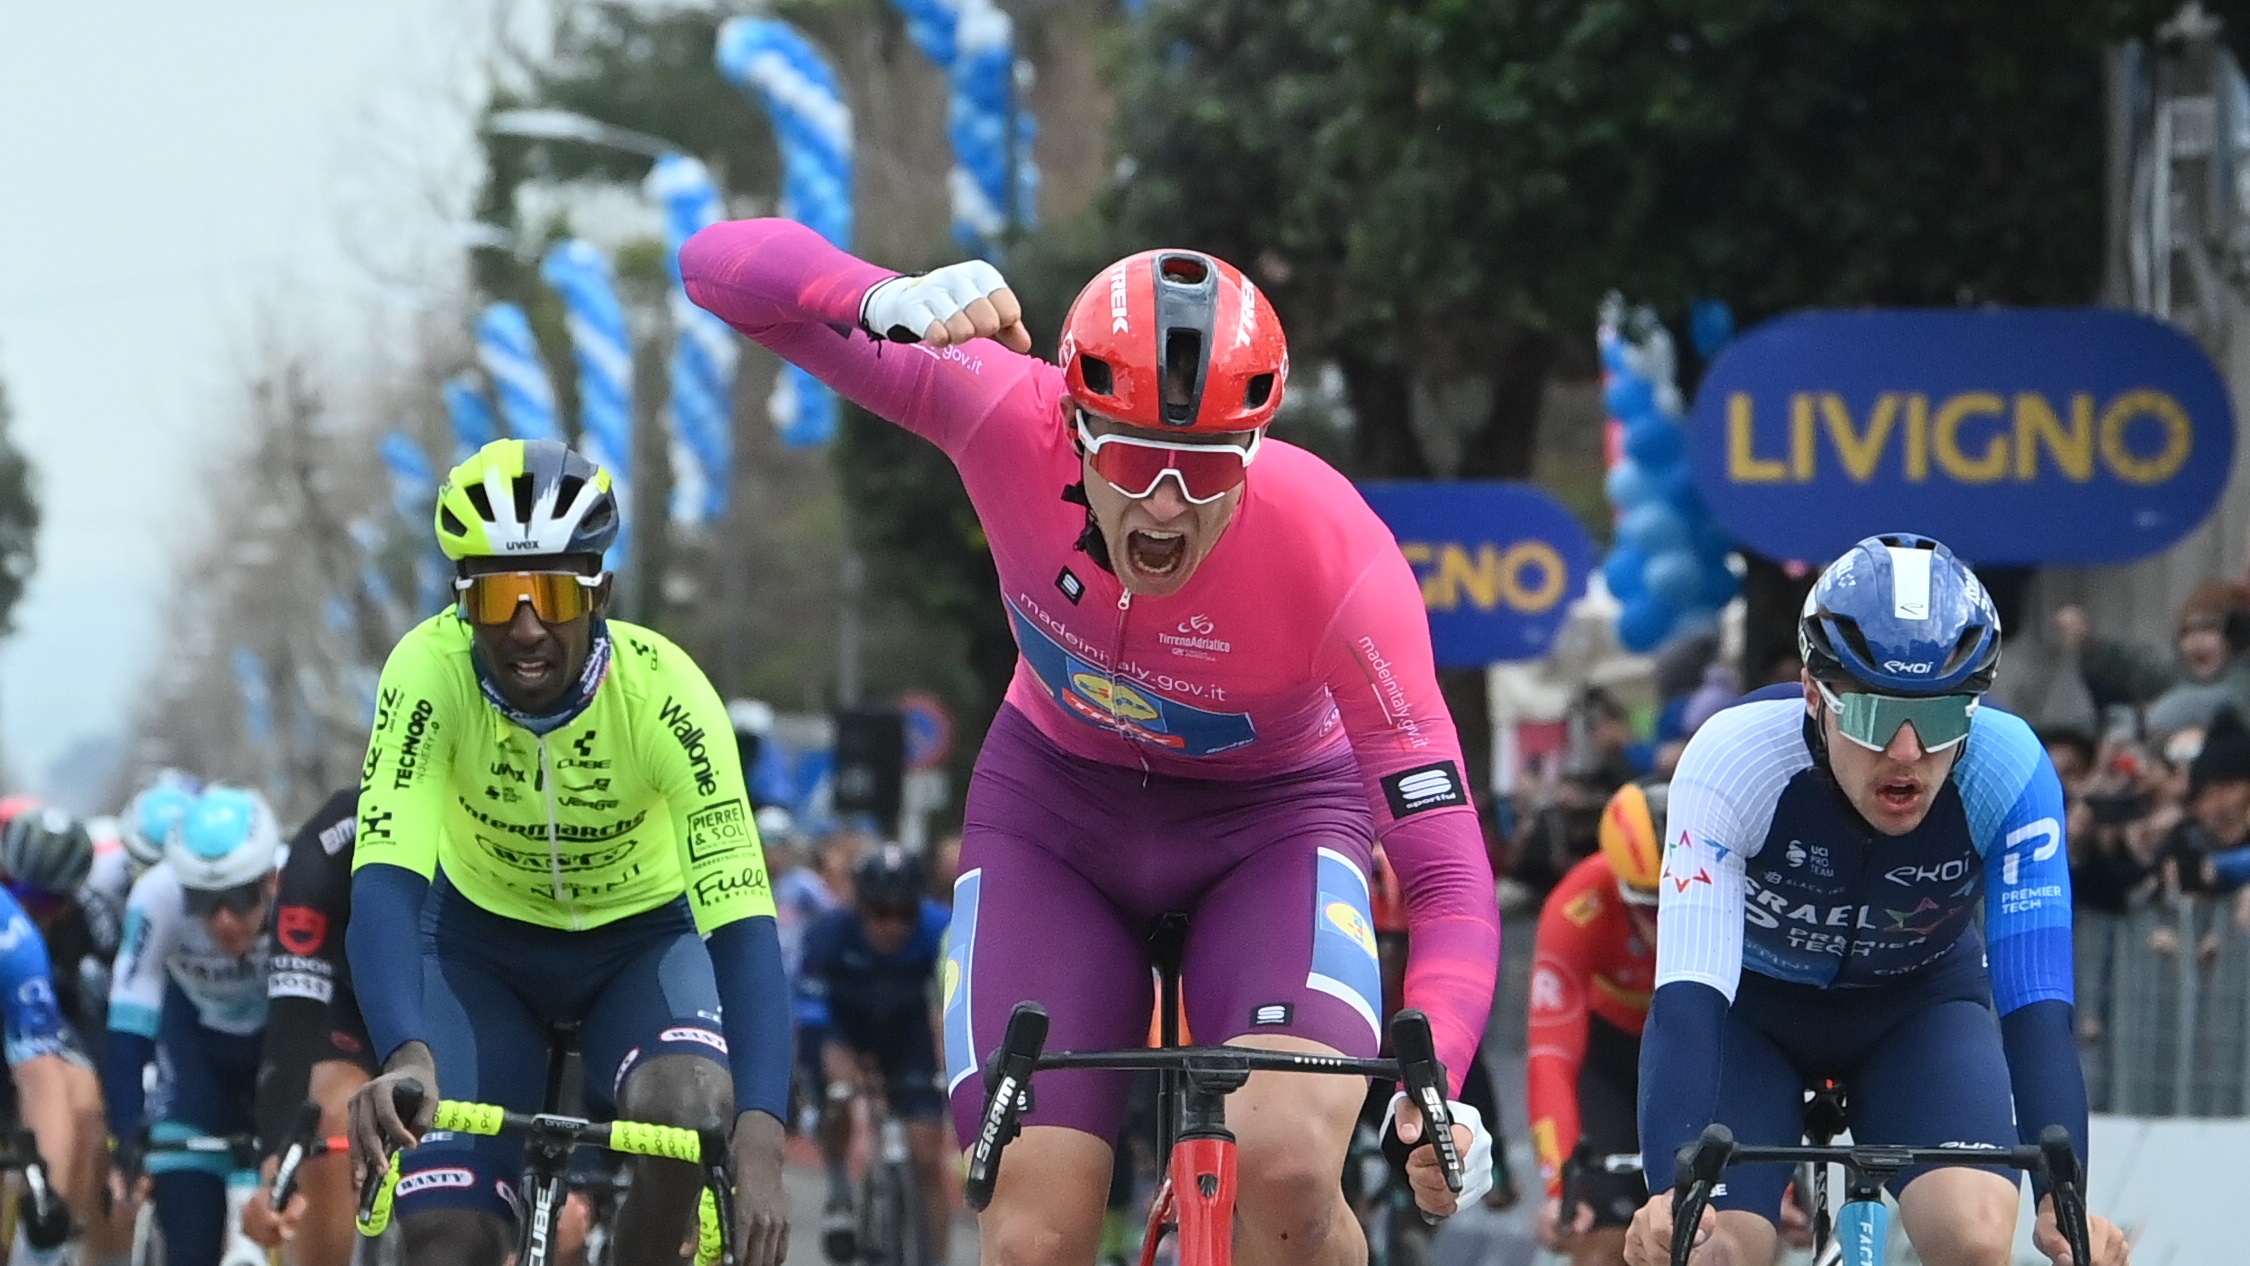 Джонатан Милан выиграл четвёртый этап велогонки «Тиррено — Адриатико»